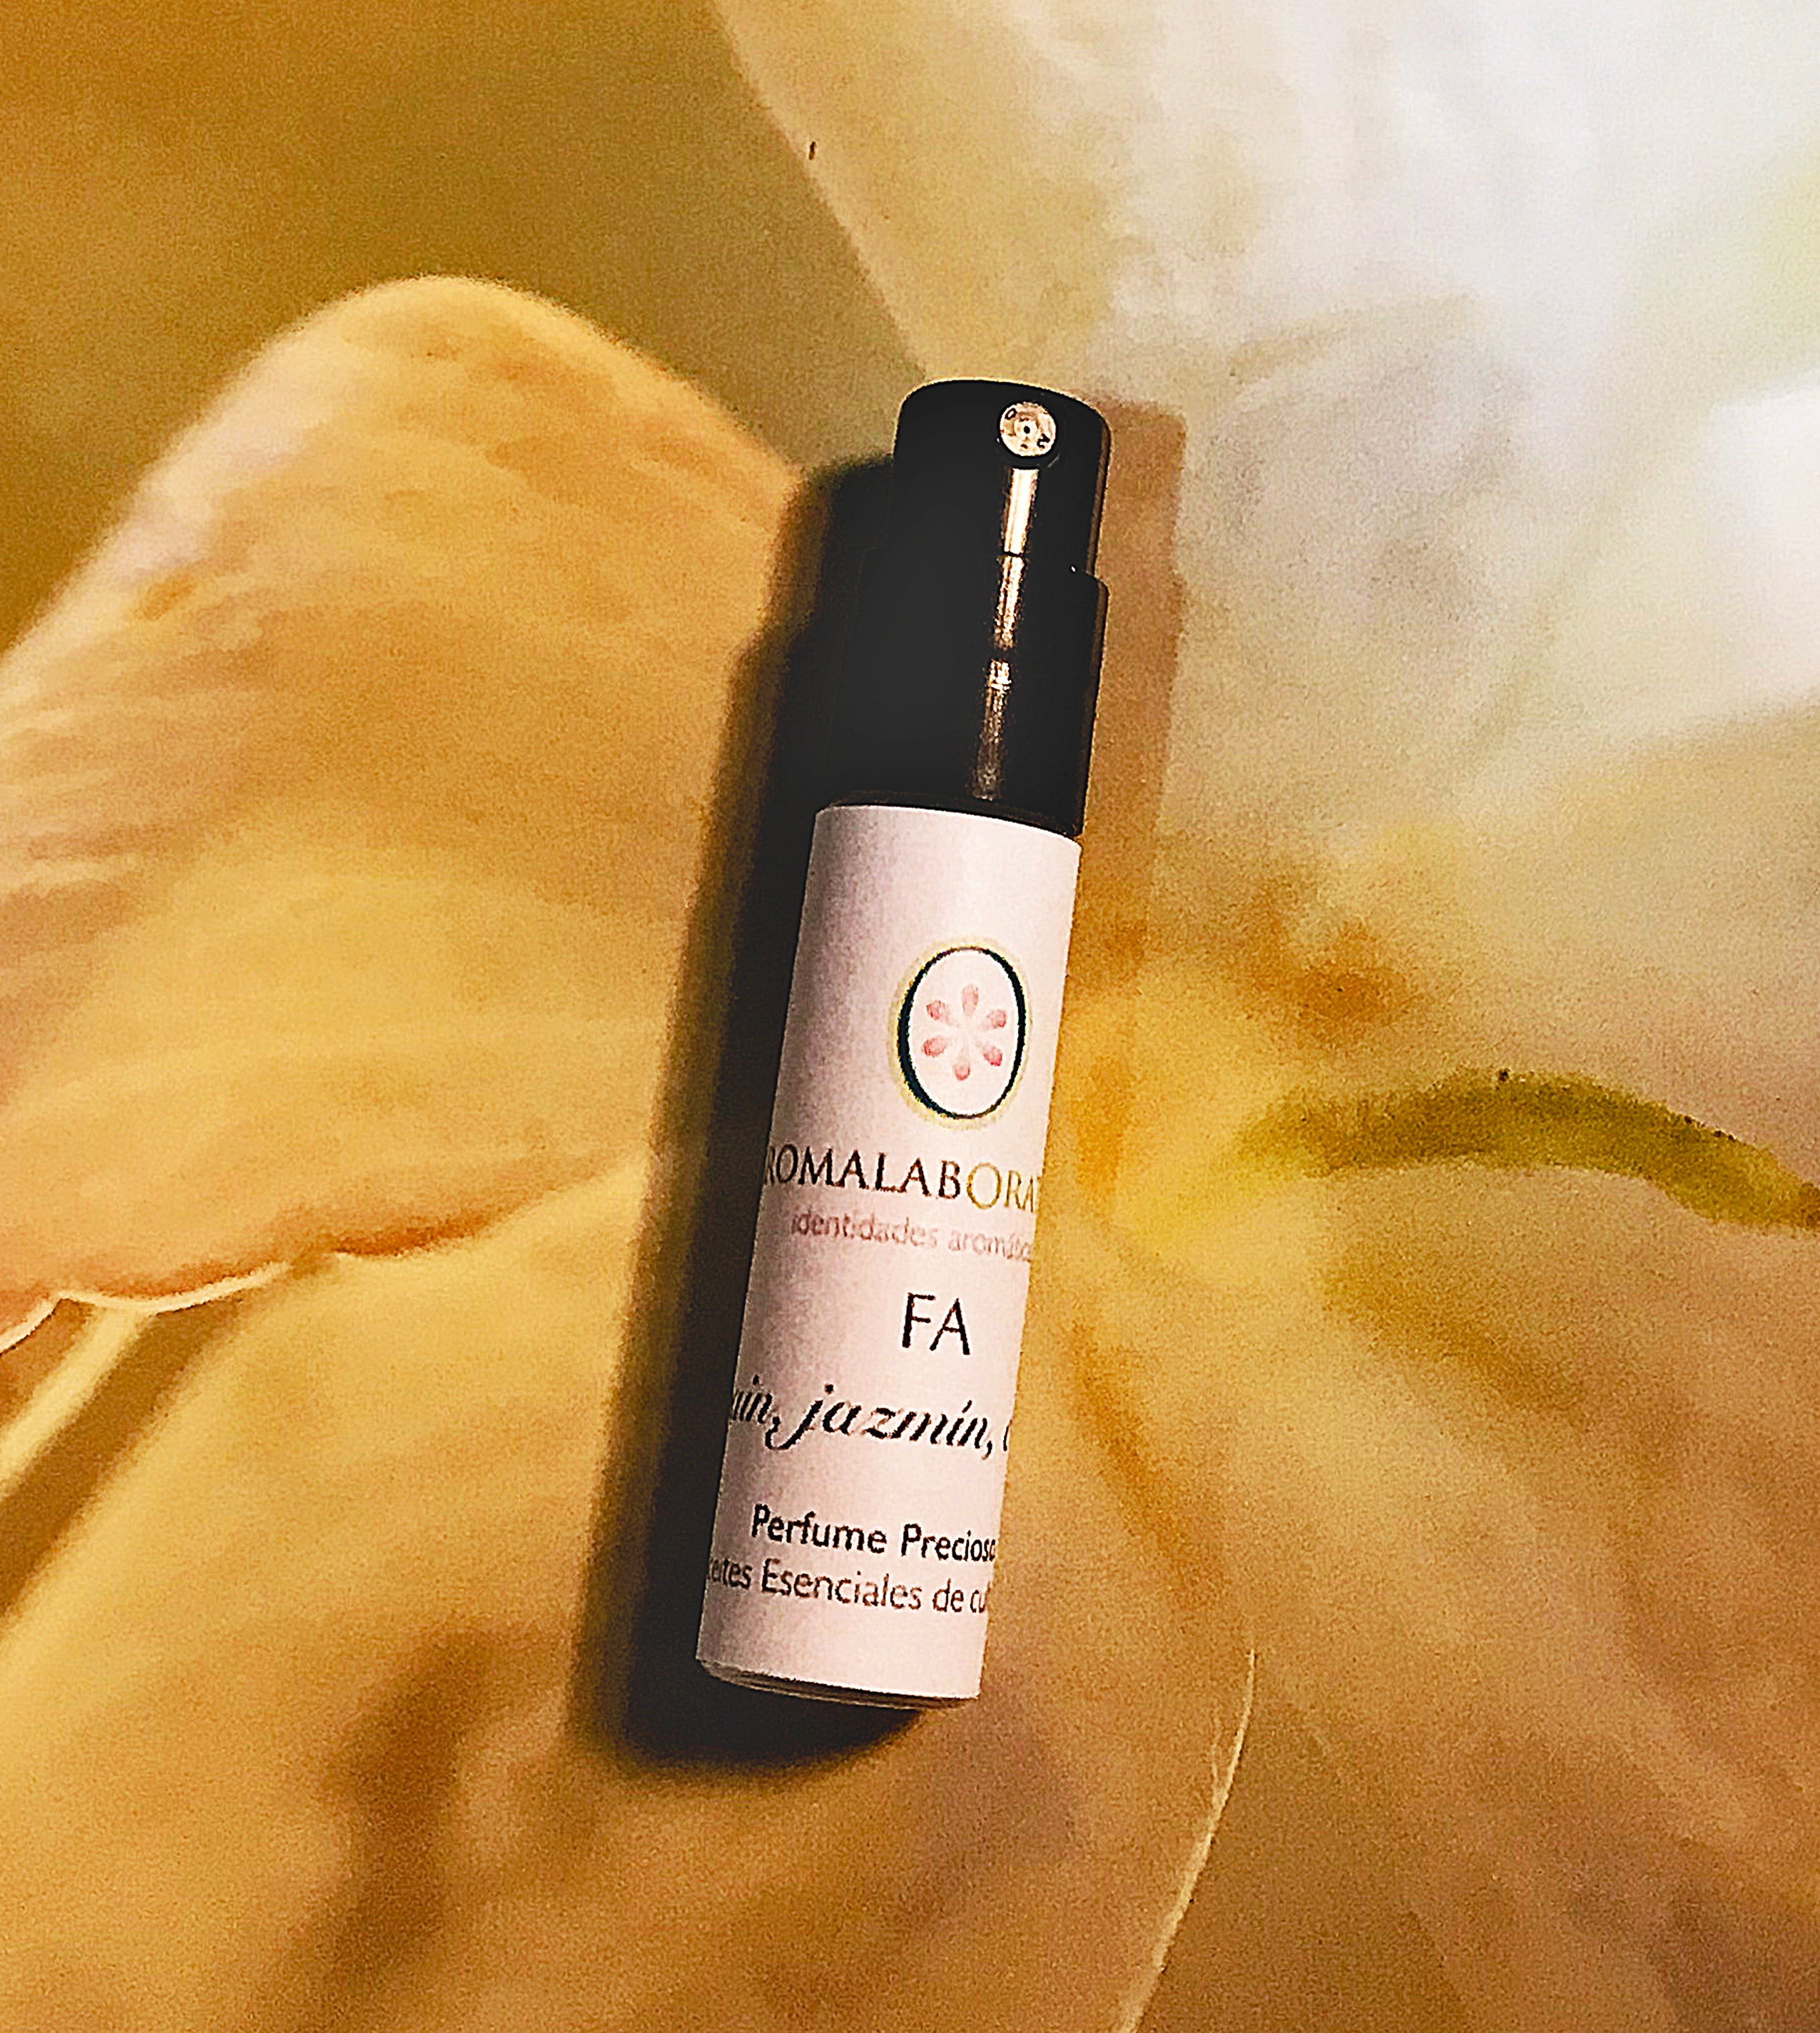 FA. Aromatherapy Clean Perfume. Organic. 2ml.